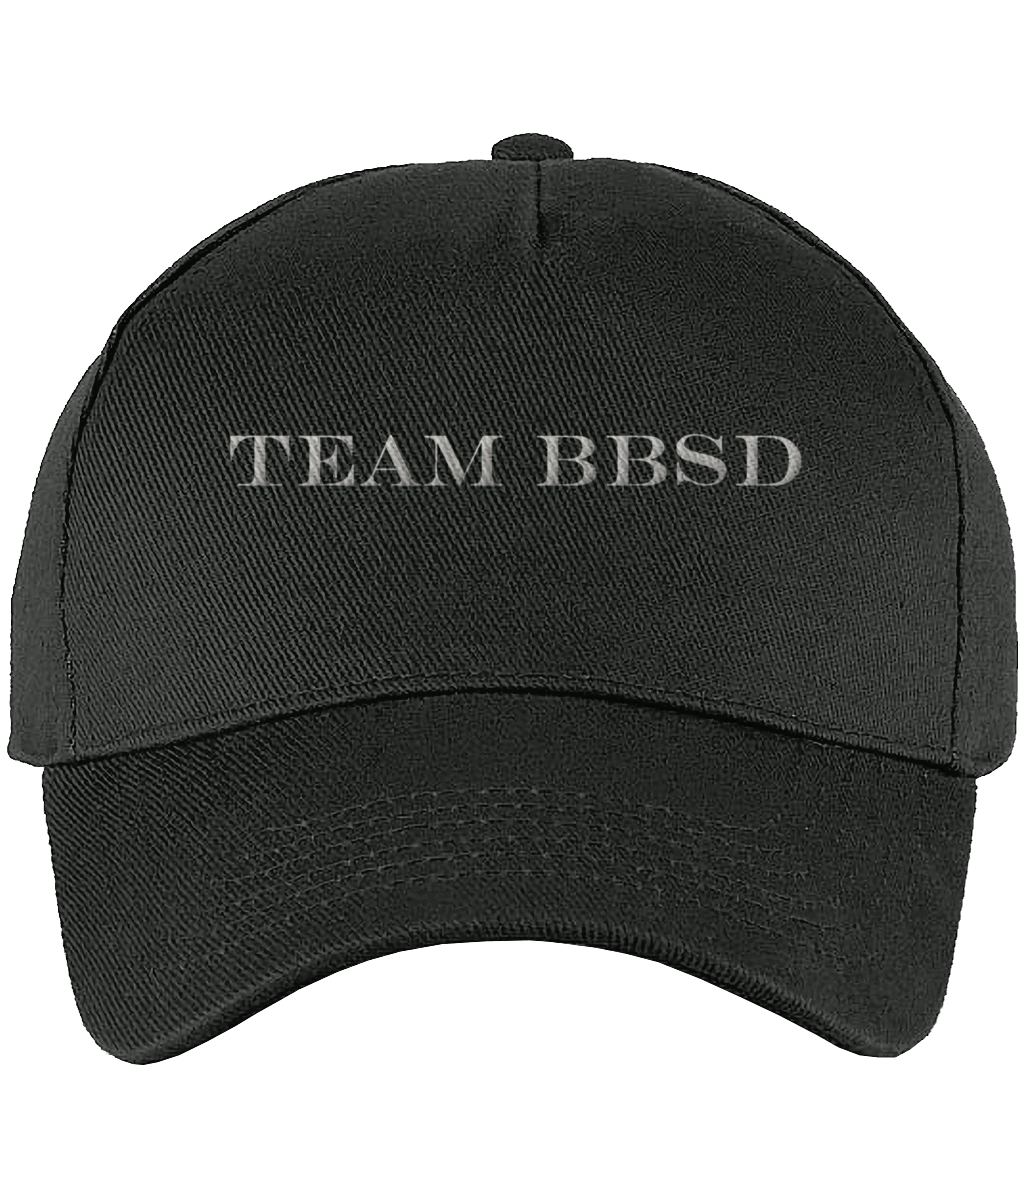 TEAM BBSD CAP